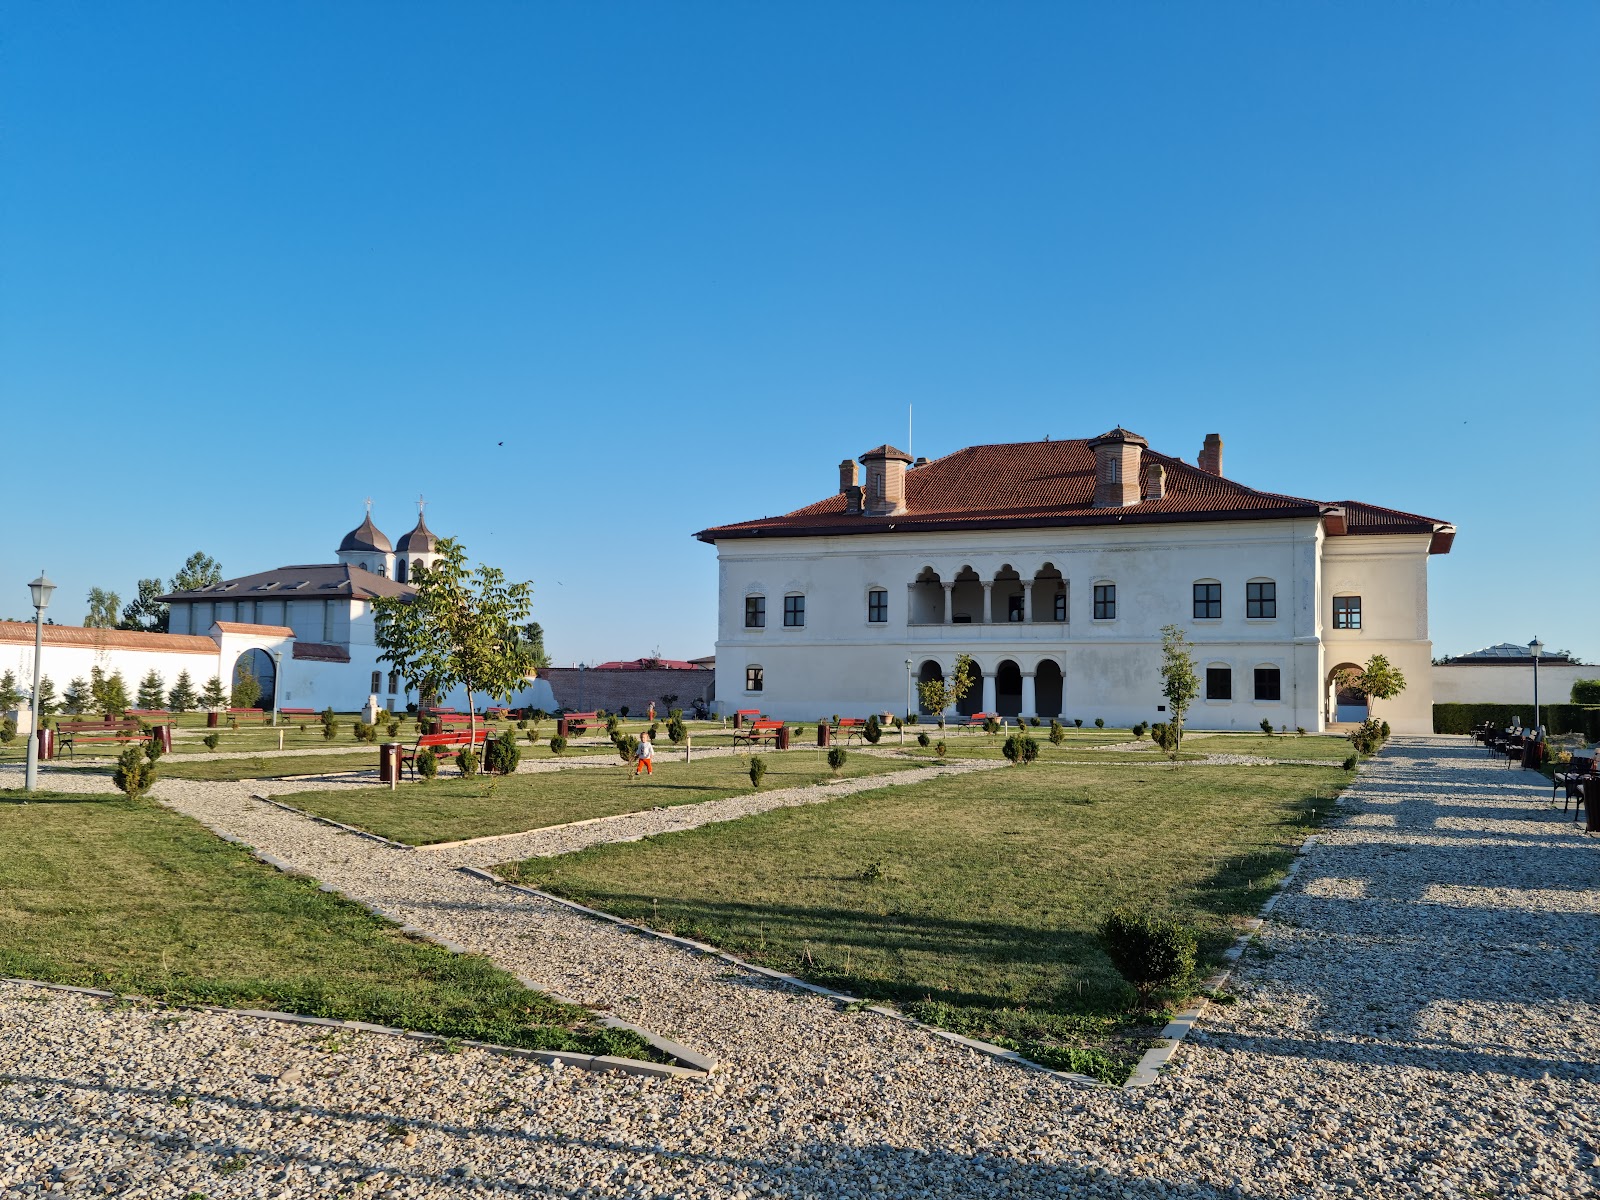 Brancoveanu's Palace